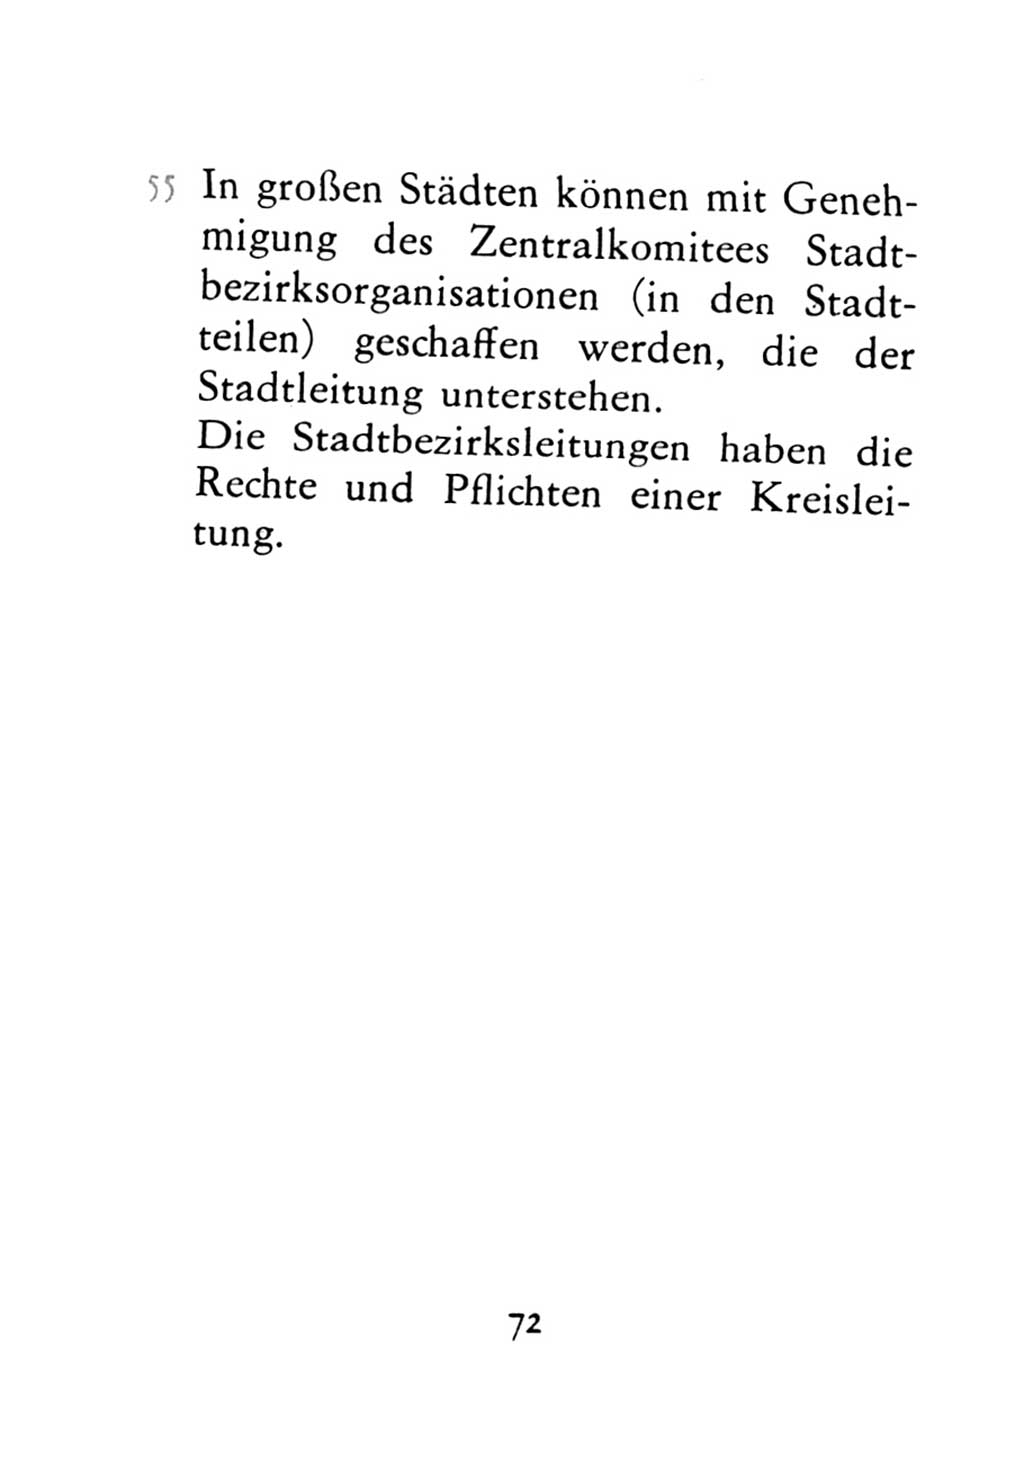 Statut der Sozialistischen Einheitspartei Deutschlands (SED) 1971, Seite 72 (St. SED DDR 1971, S. 72)